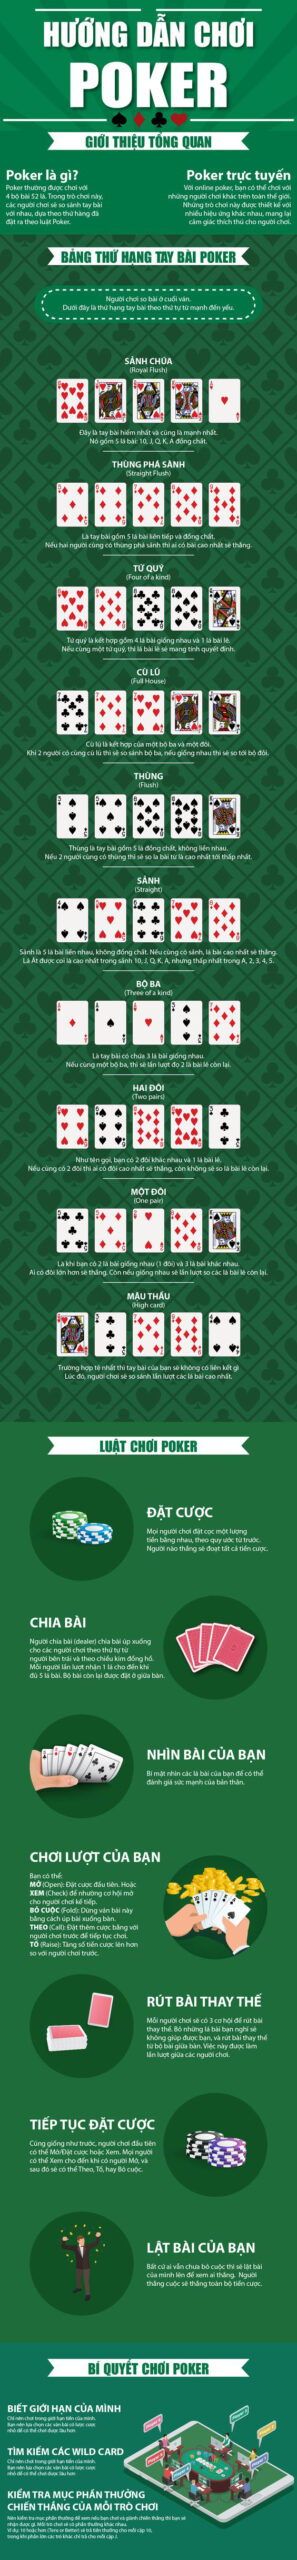 hướng dẫn chơi bài poker